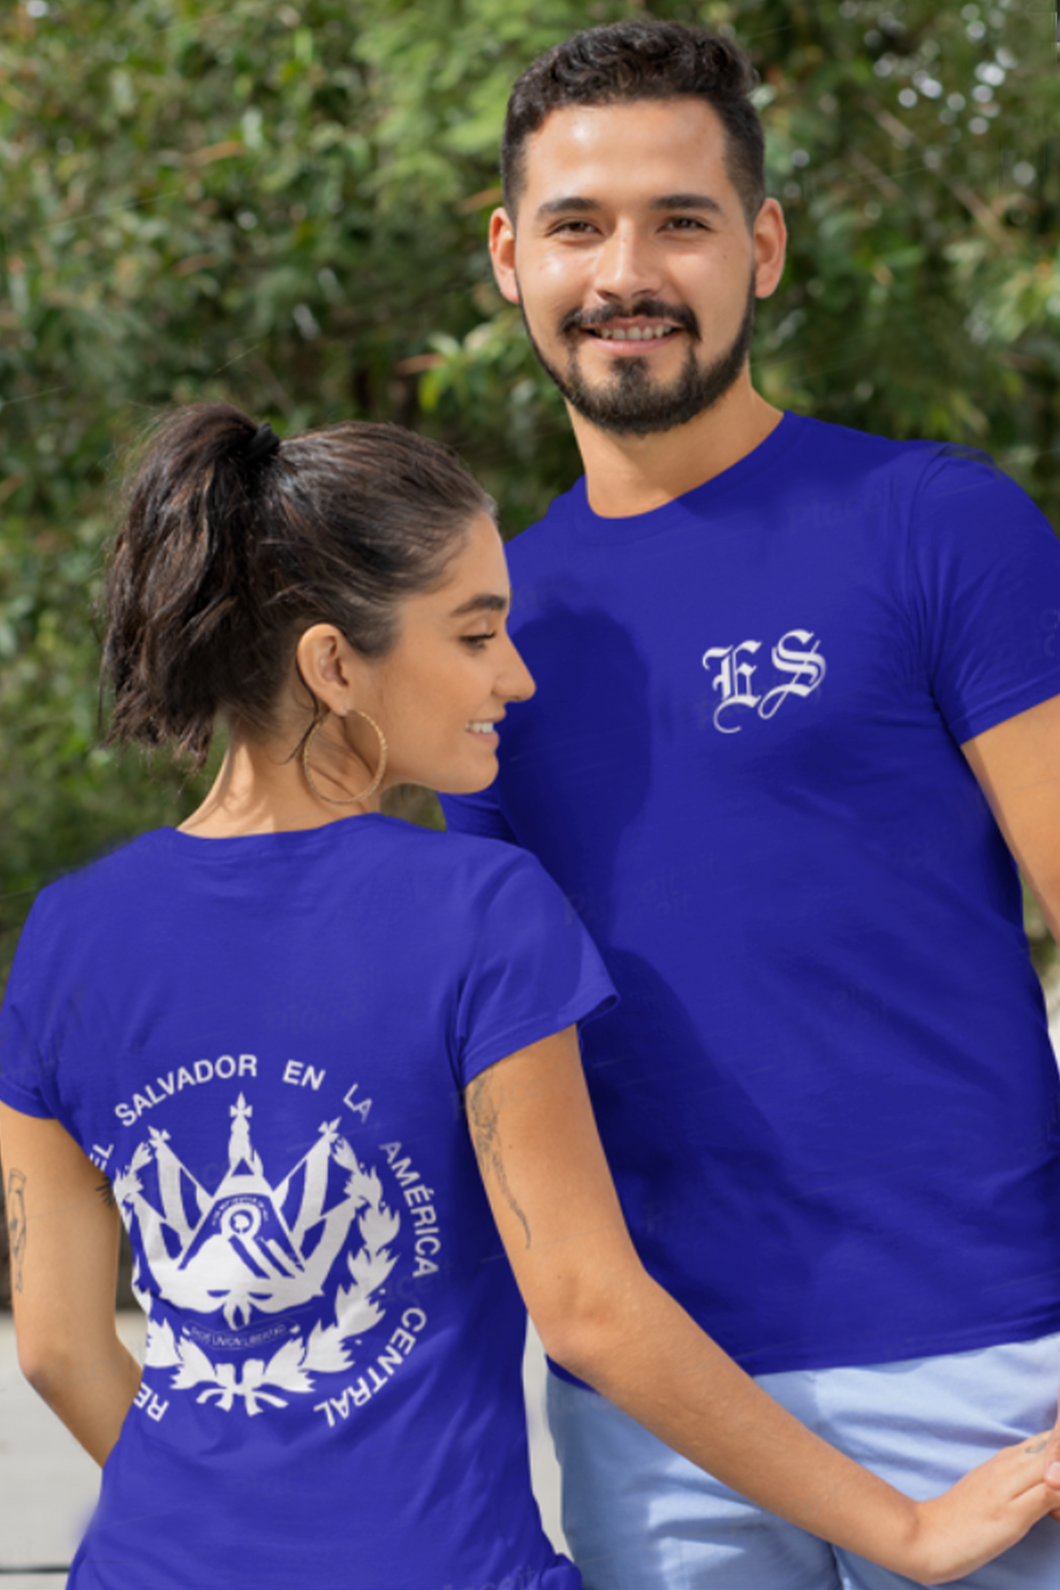 El Salvador Shirt womens